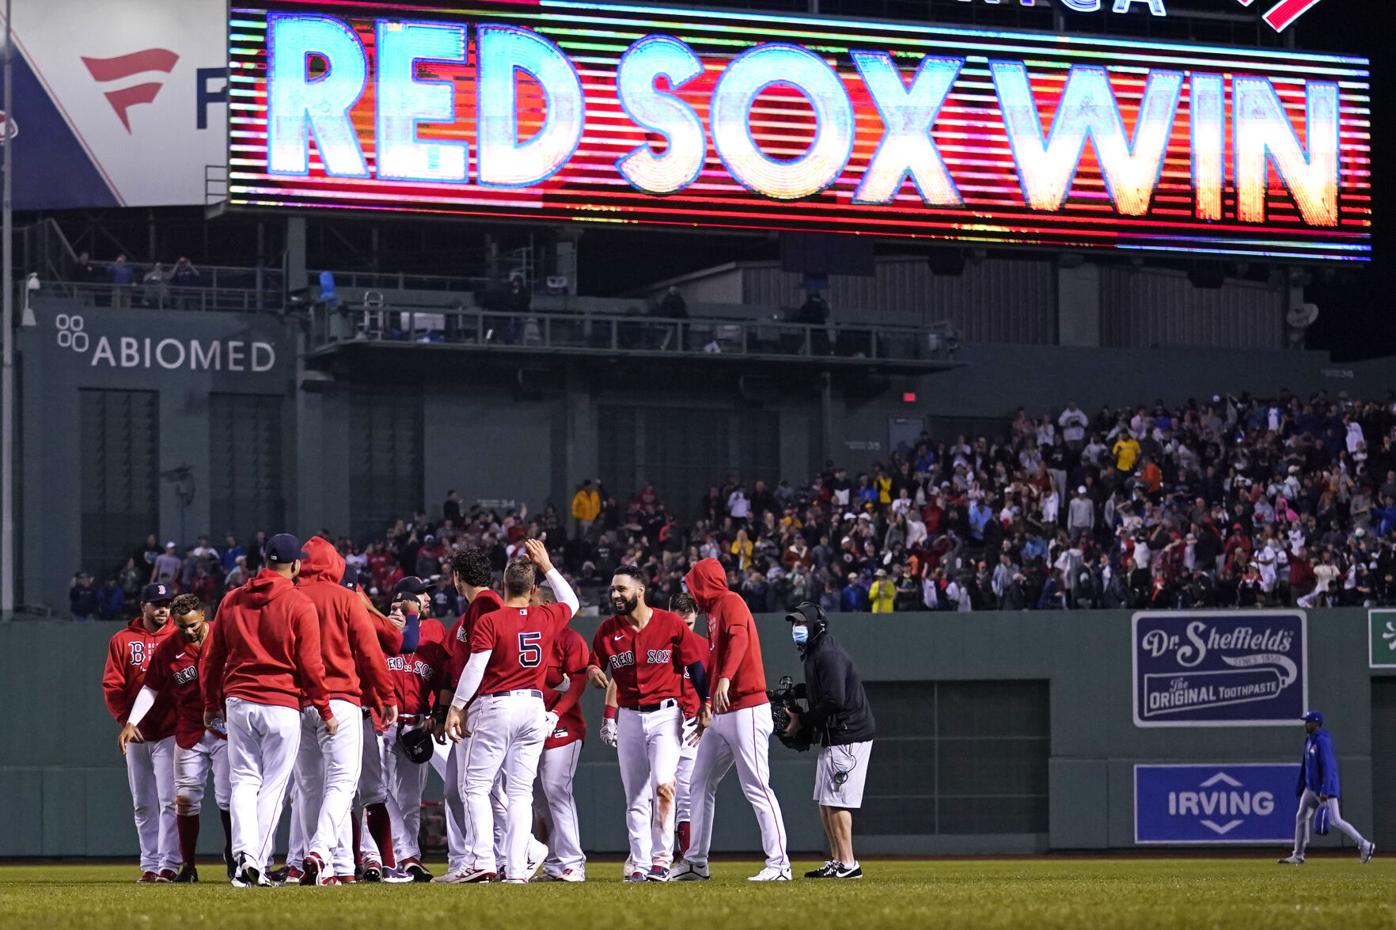 Red Sox walk-off